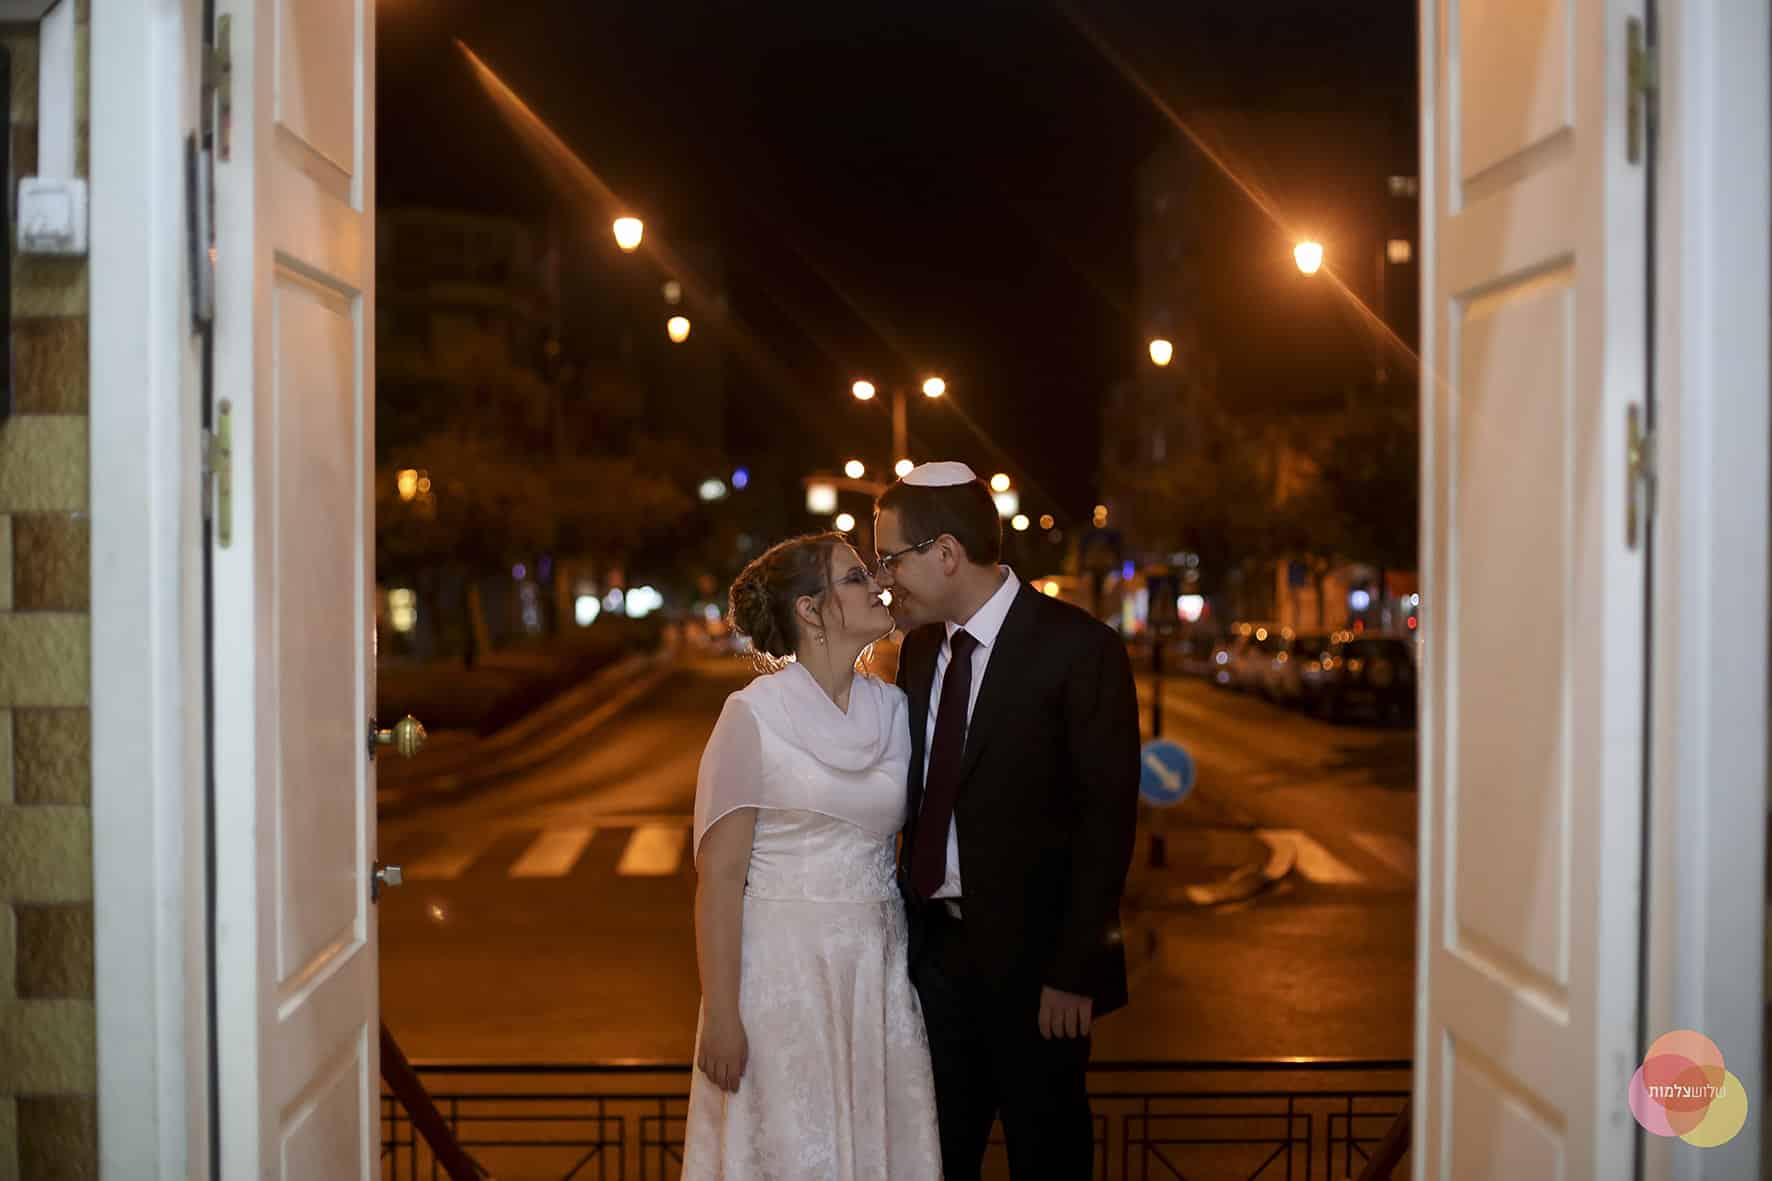 זוג מתחתן בבית הכנסת הגדול. למצולמים אין קשר לכתבה. צילום חופית שלוש צלמות (1)